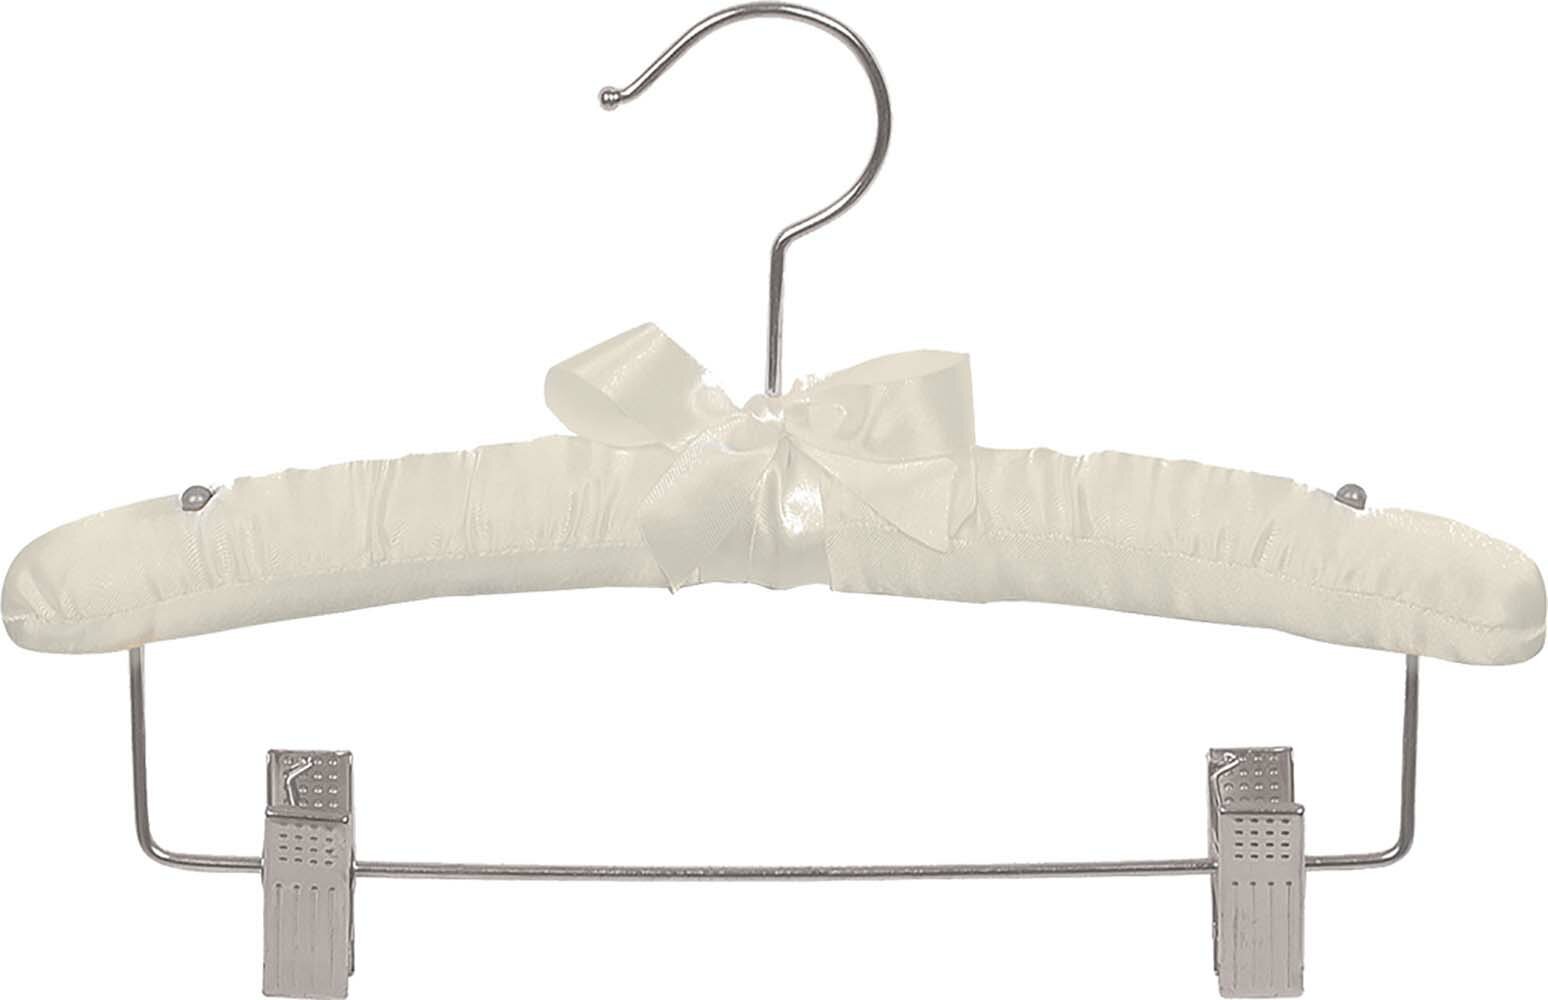 White Satin Padded Hanger